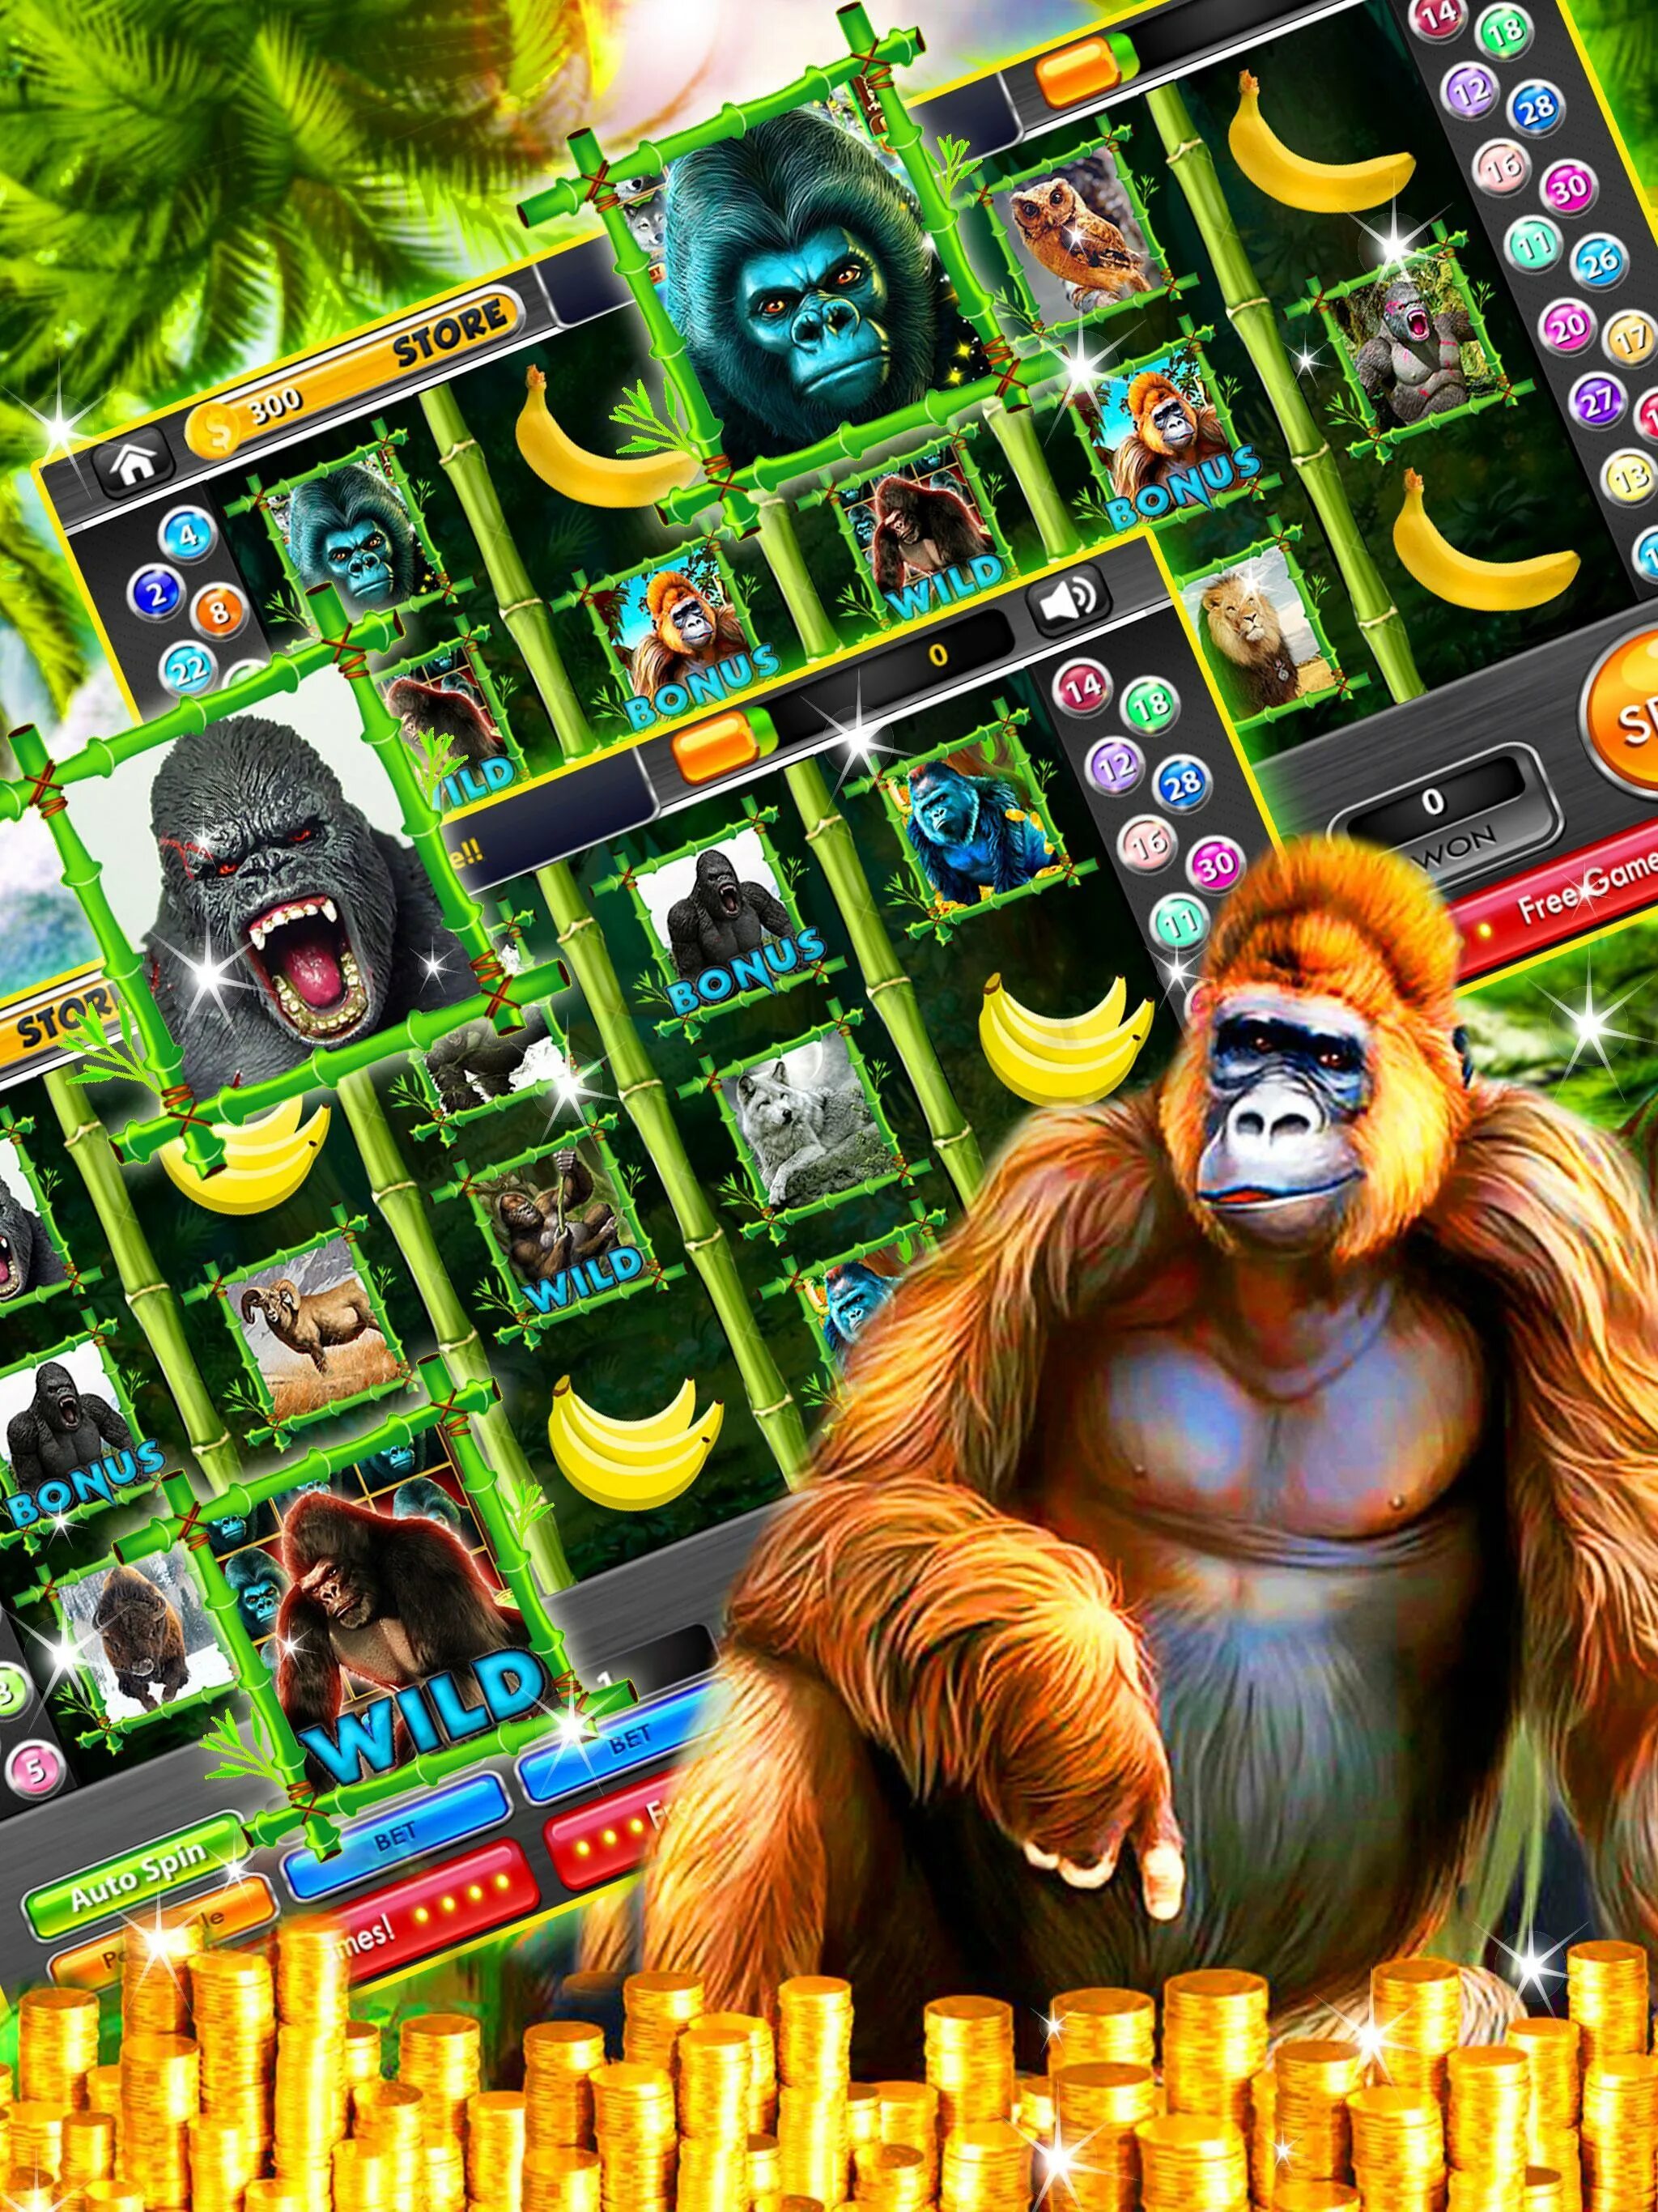 Горилла casino gorilla vad1. Игровой автомат горилла. Горилла в джунглях. Слот с гориллой. Игровой автомат Monkey Jungle.